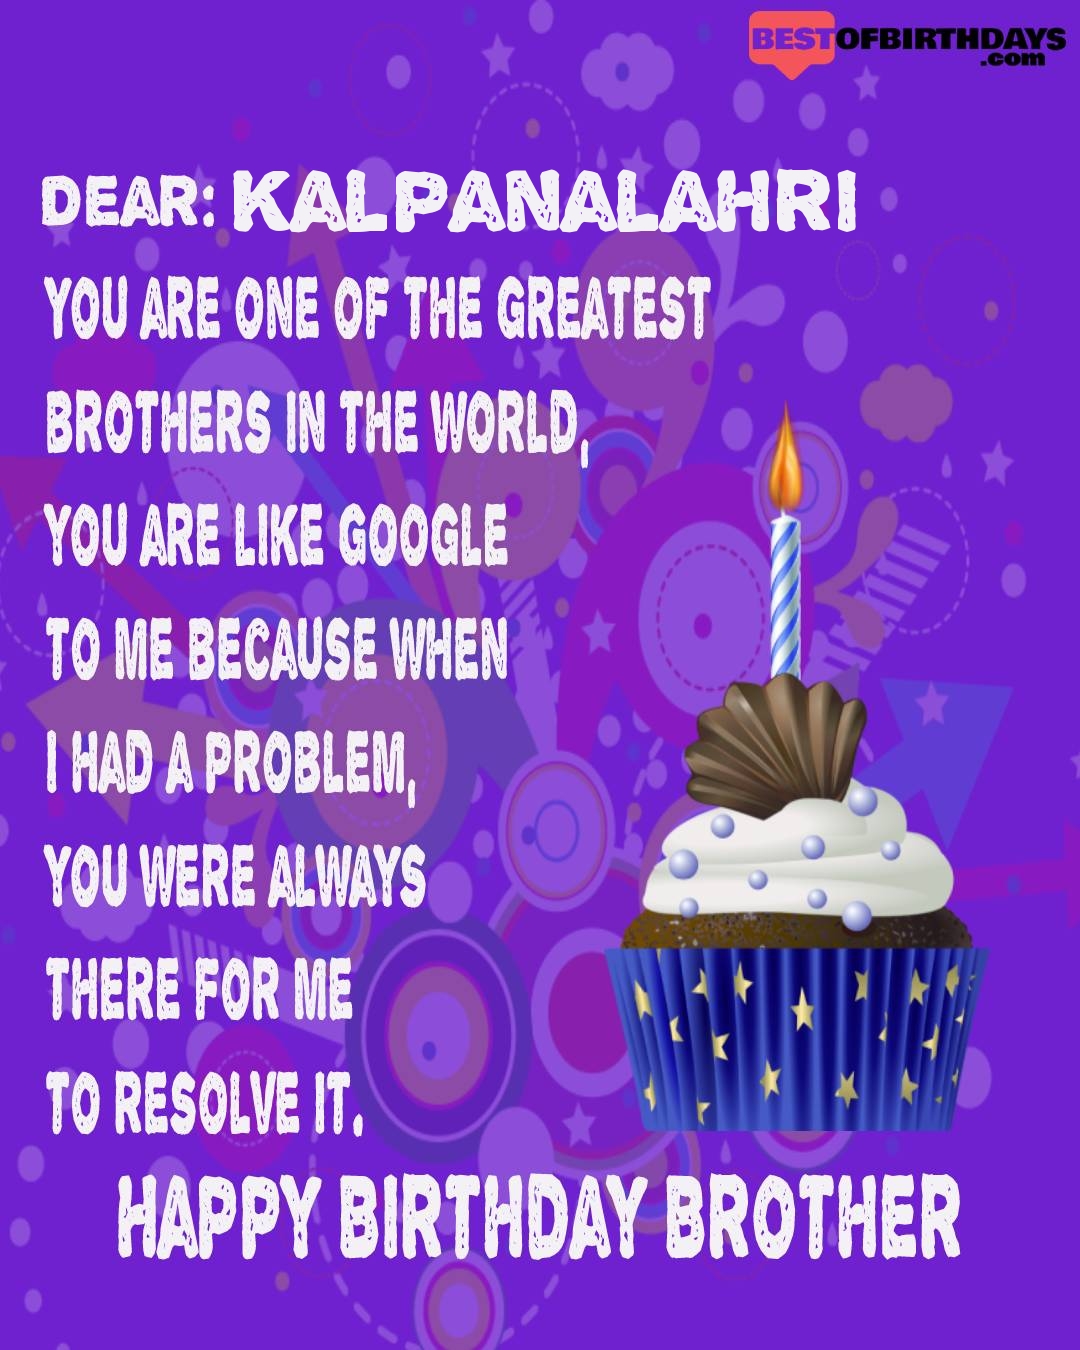 Happy birthday kalpanalahri bhai brother bro